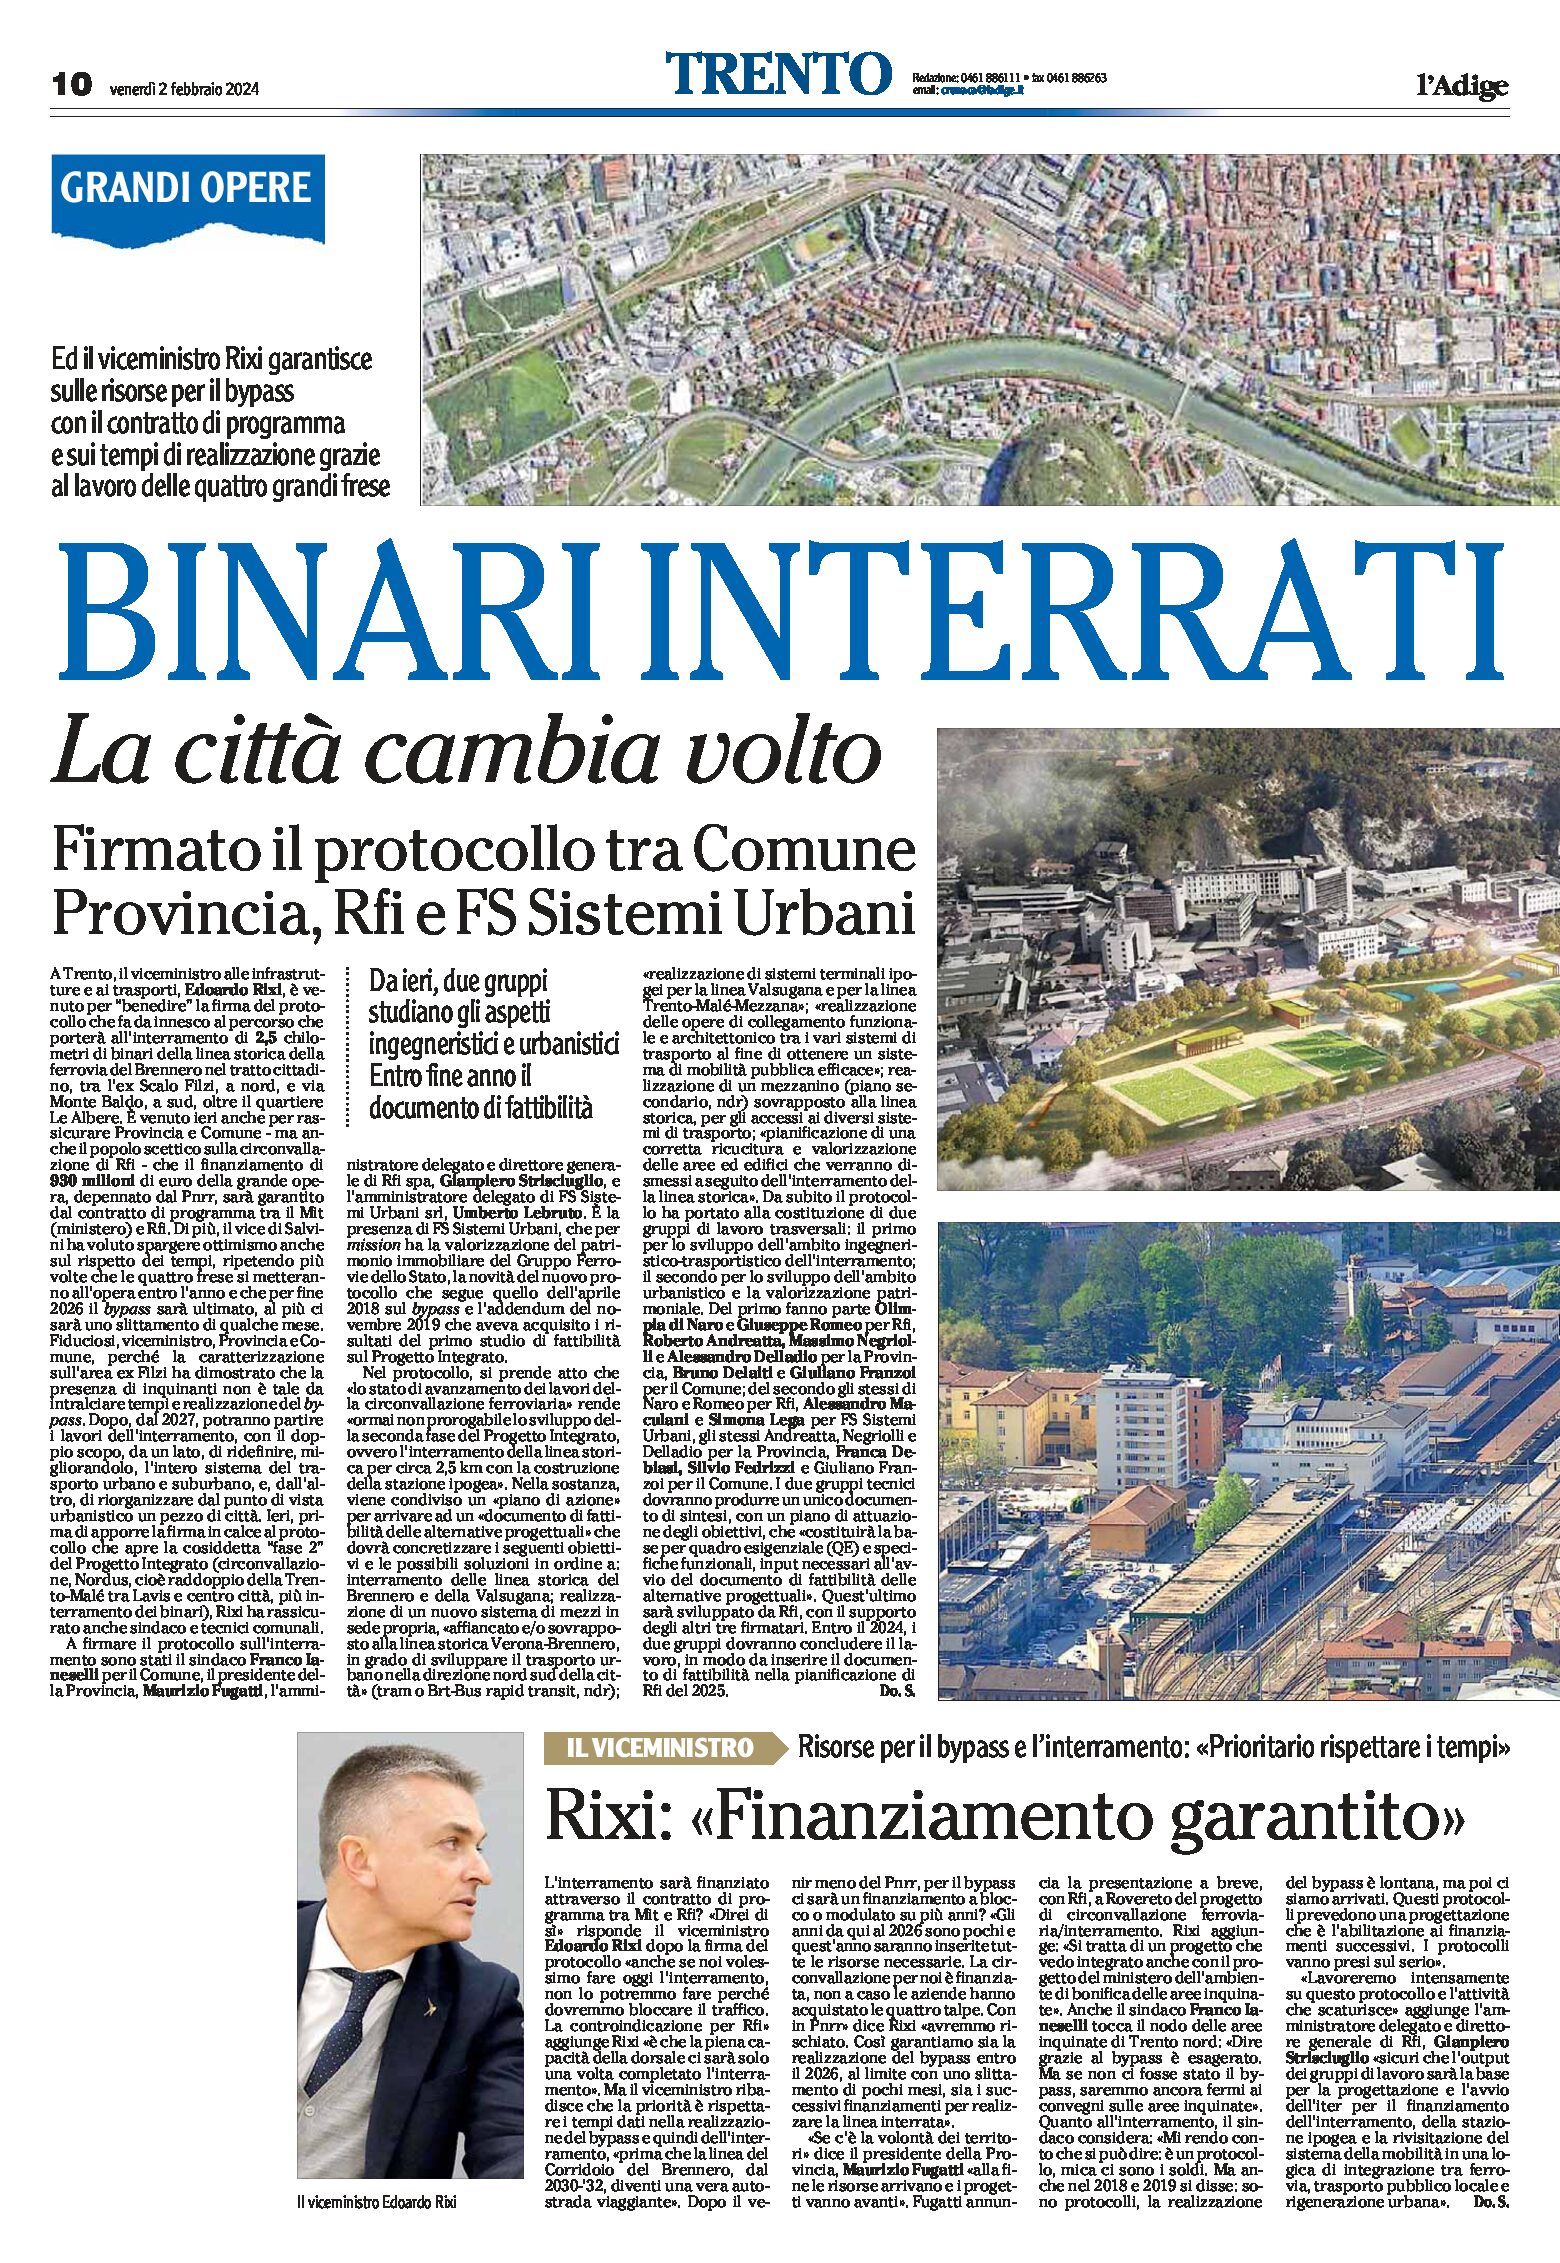 Trento, bypass: binari interrati, la città cambia volto. Firmato il protocollo tra Comune, Provincia, Rfi e Fs Sistemi Urbani